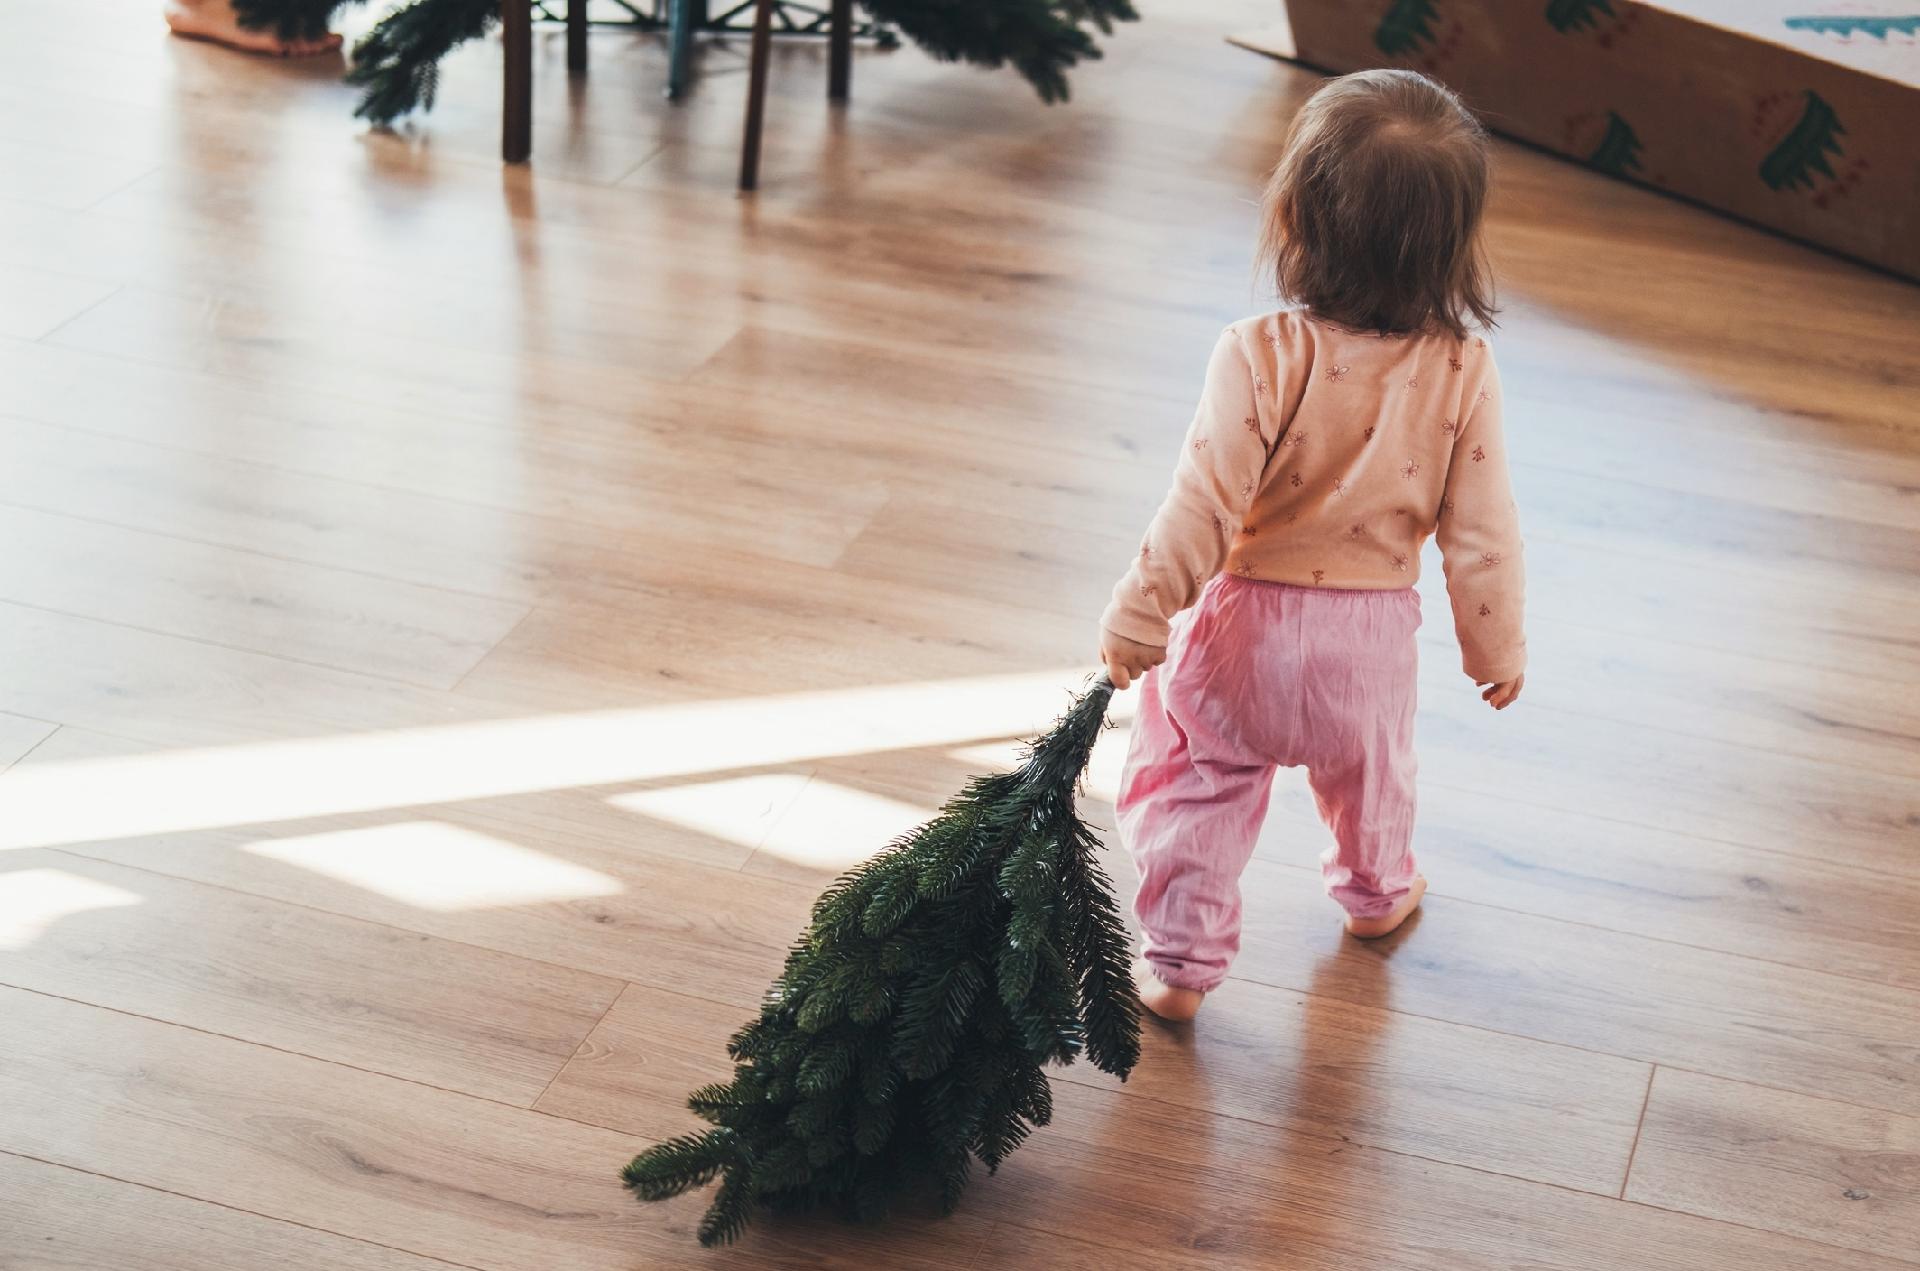 Hoje é o dia certo de desmontar a árvore de Natal